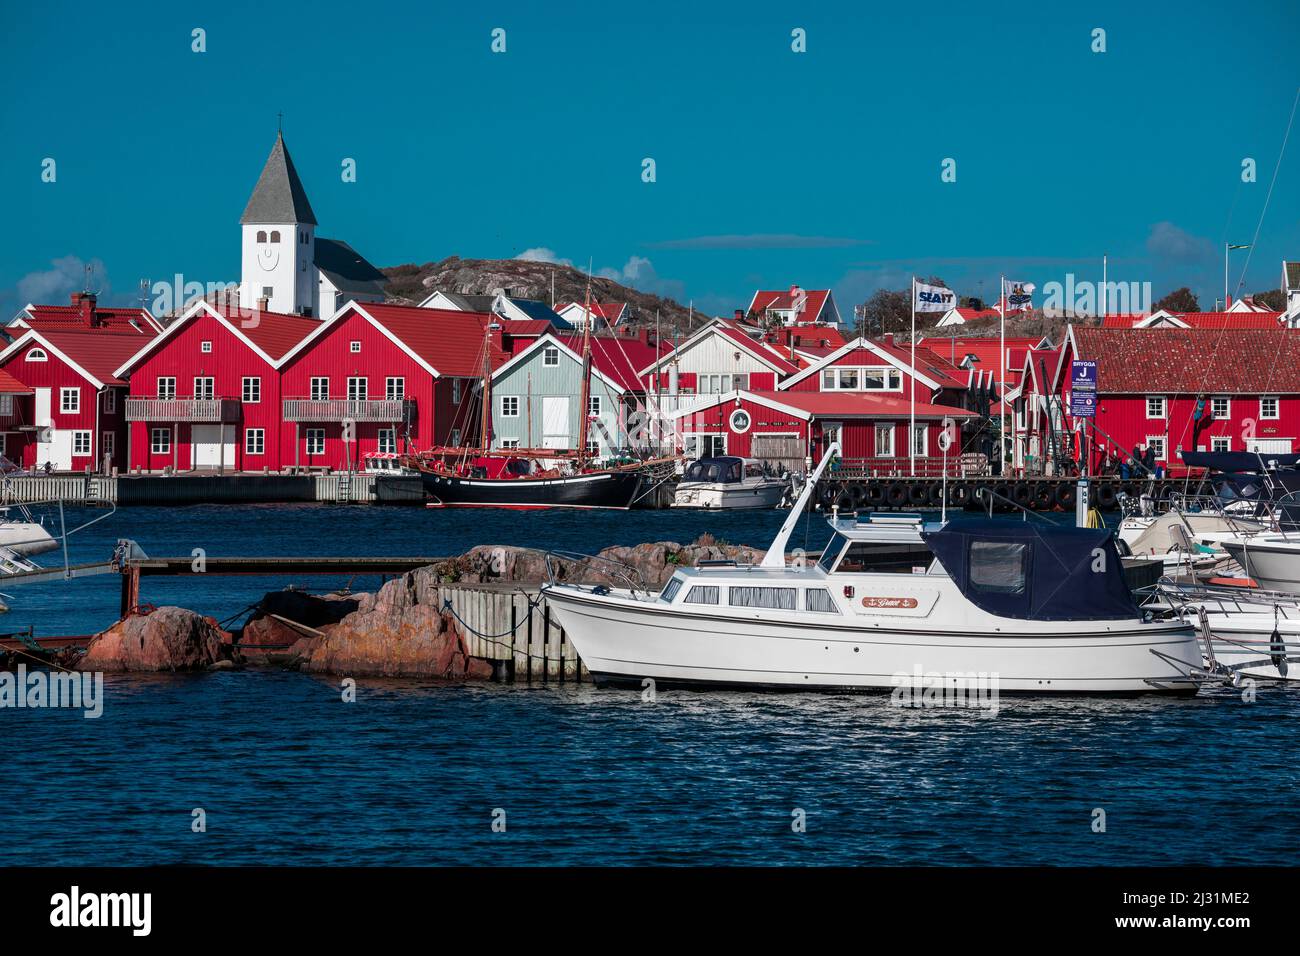 Maisons rouges avec église et bateaux dans le village de Skärhamn sur l'archipel de Tjörn sur la côte ouest de la Suède, ciel bleu avec soleil Banque D'Images